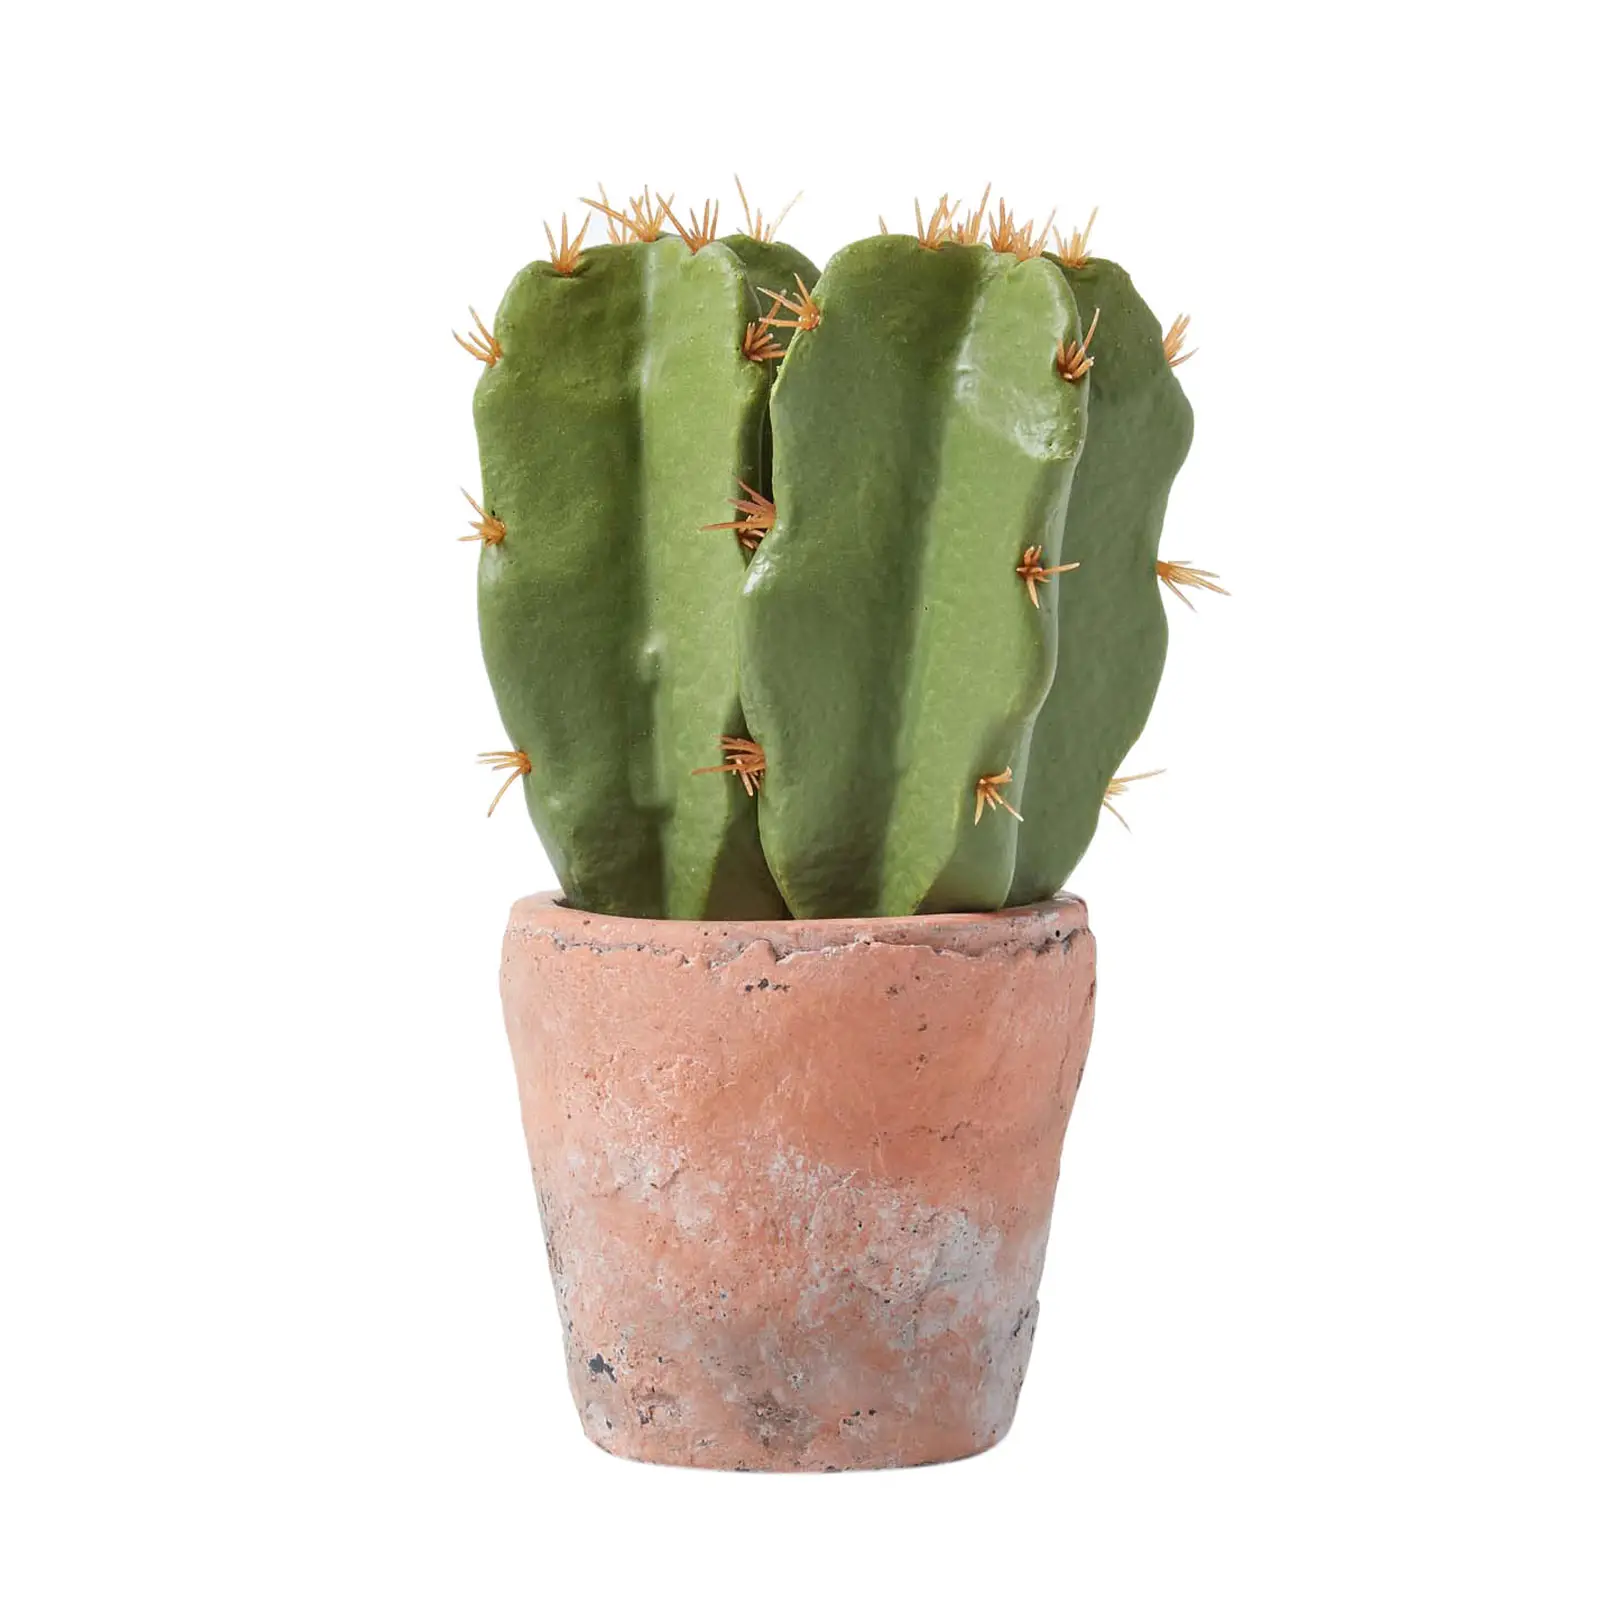 Klein K眉nstlicher Kaktus in Topf